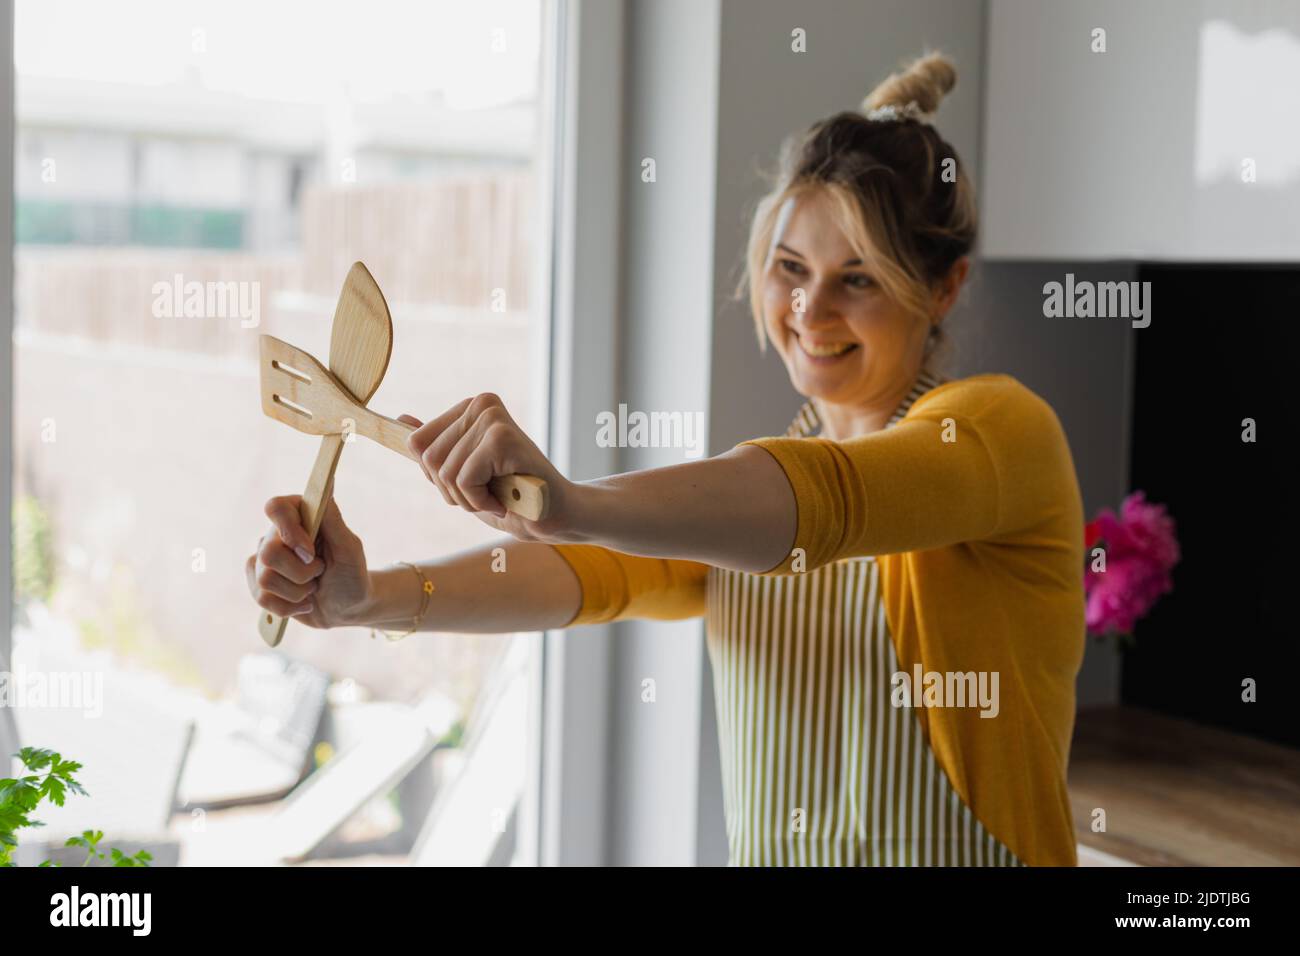 Drôle, inspiré, souriante femme blonde joyeuse de cuisine, croisant la spatule de cuisine en bois rigide armé. Cours de formation de cuisinier Banque D'Images